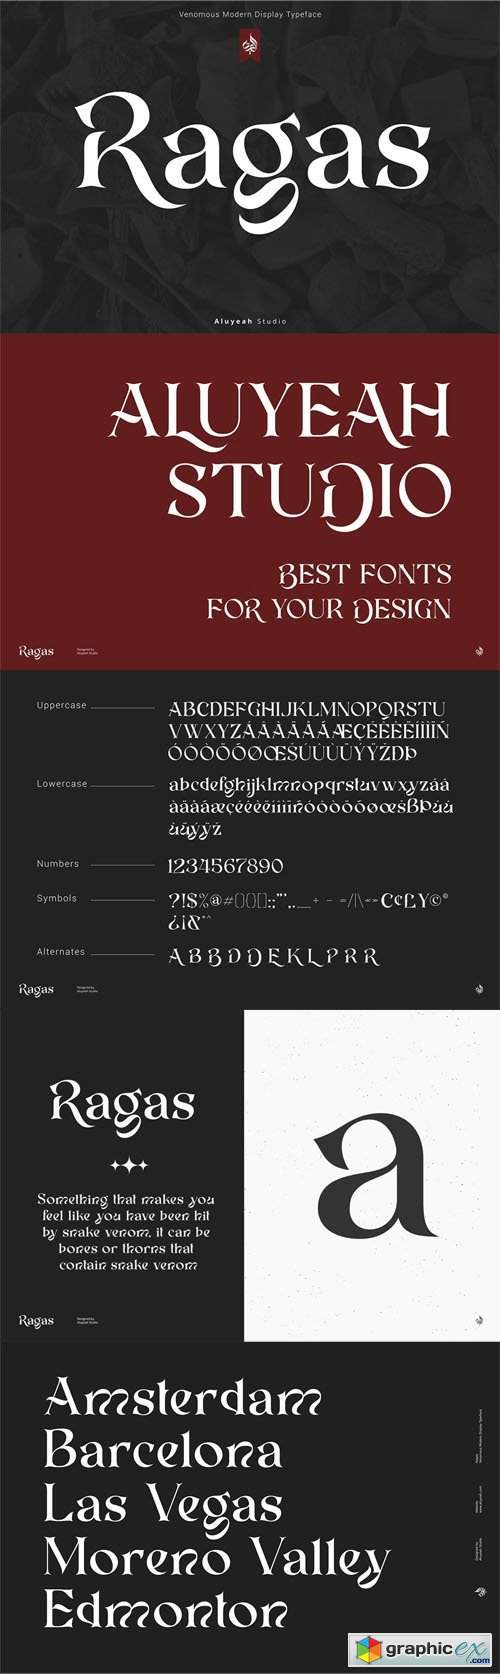 Ragas - Modern Display Typeface